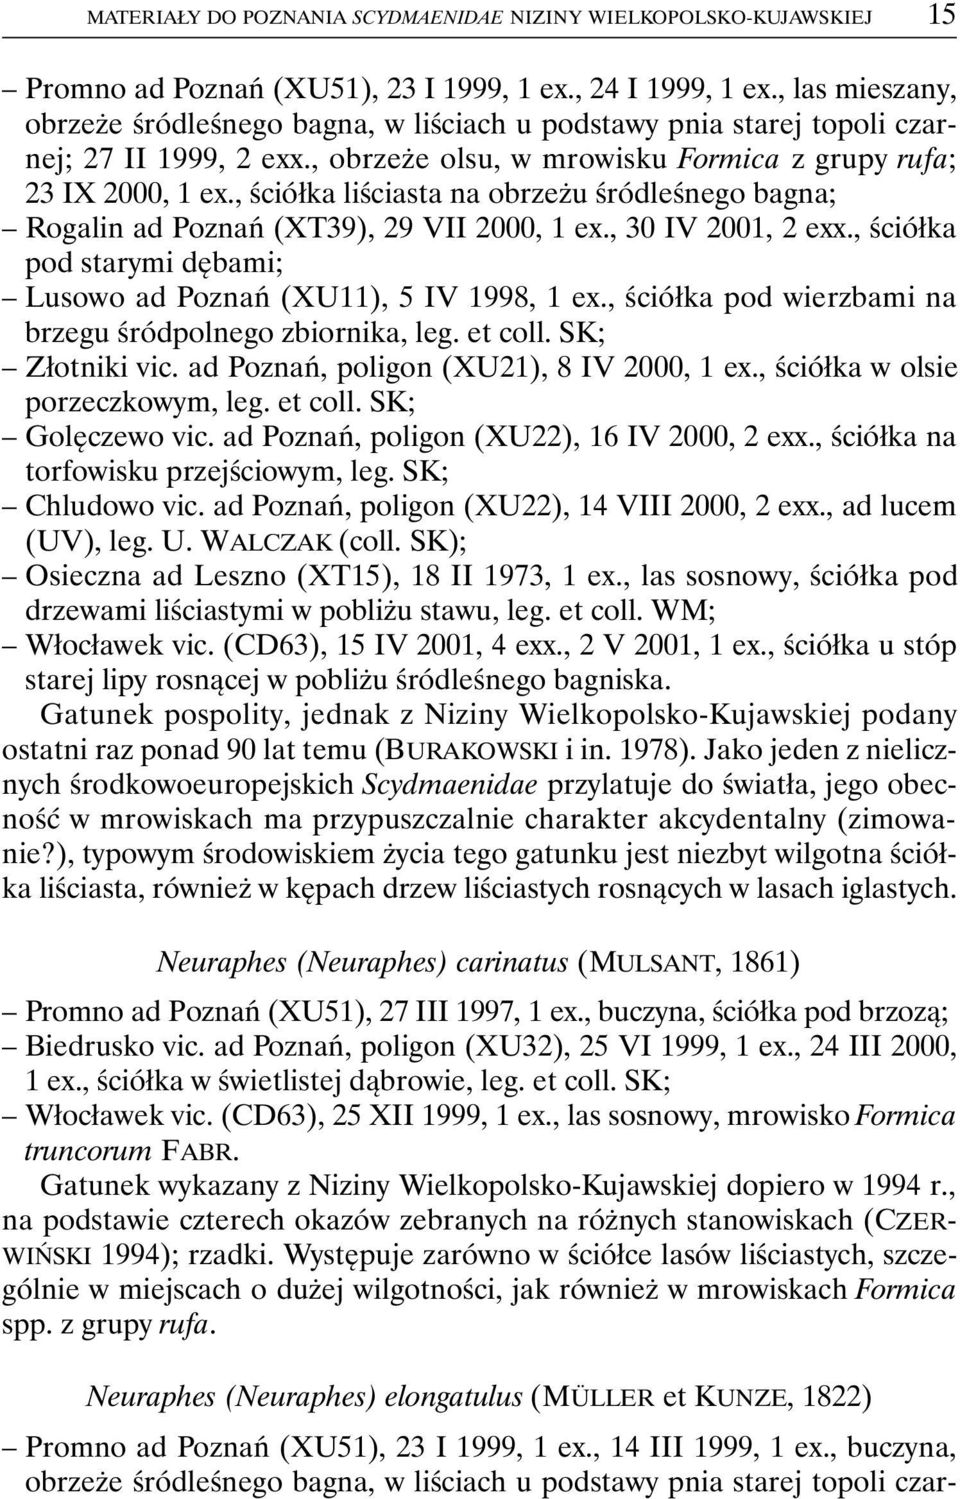 , ściółka liściasta na obrzeżu śródleśnego bagna; Rogalin ad Poznań (XT39), 29 VII 2000, 1 ex., 30 IV 2001, 2 exx., ściółka pod starymi dębami; Lusowo ad Poznań (XU11), 5 IV 1998, 1 ex.